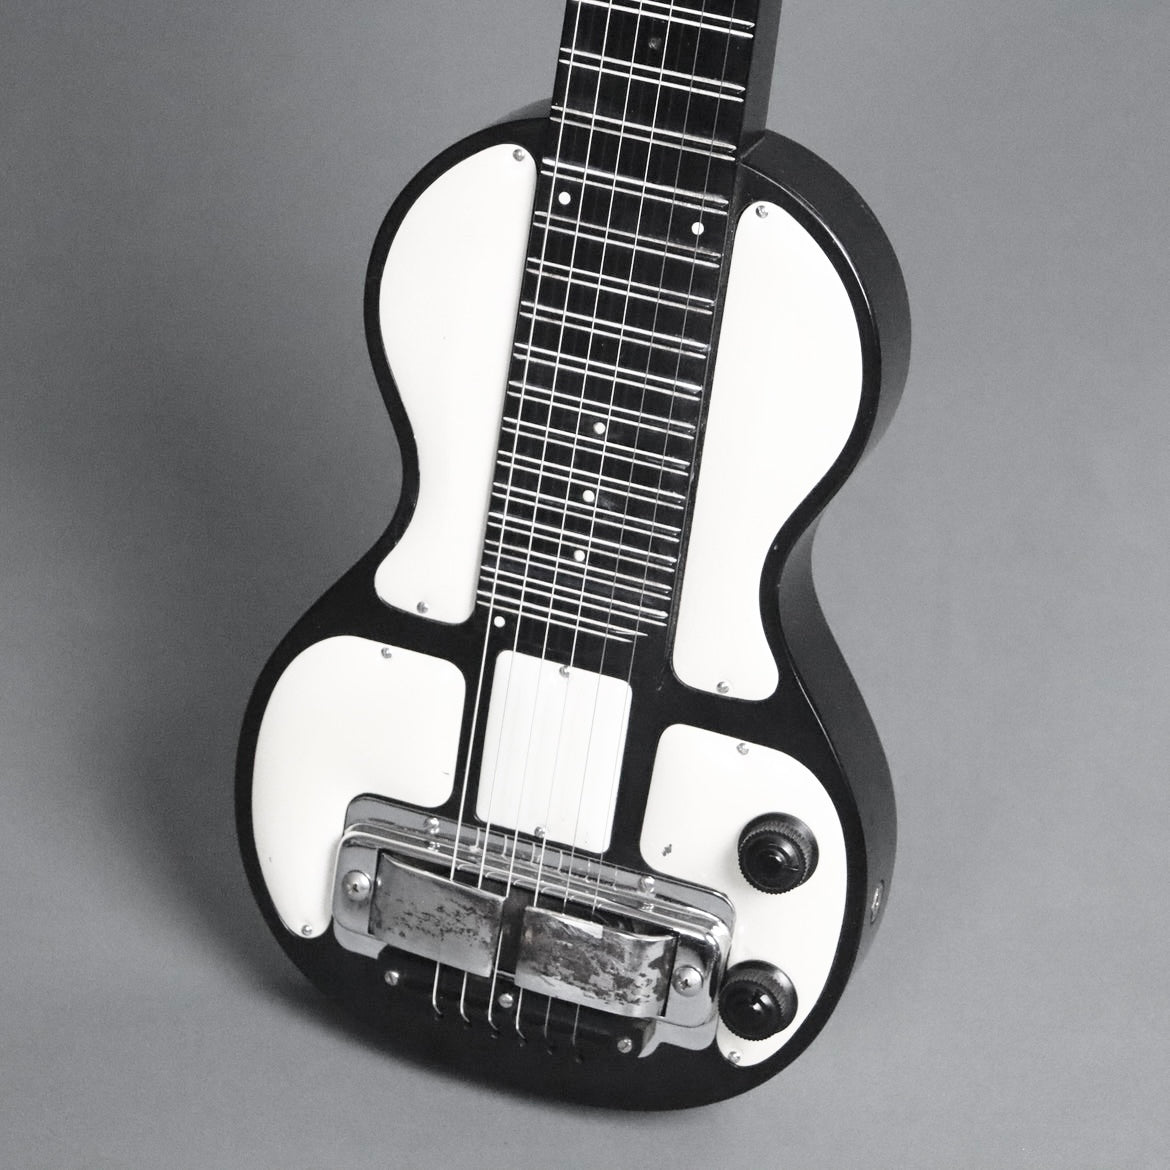 1951 Rickenbacker B-6 Hawaiian Lap Steel Guitar "Panda" Lapsteel